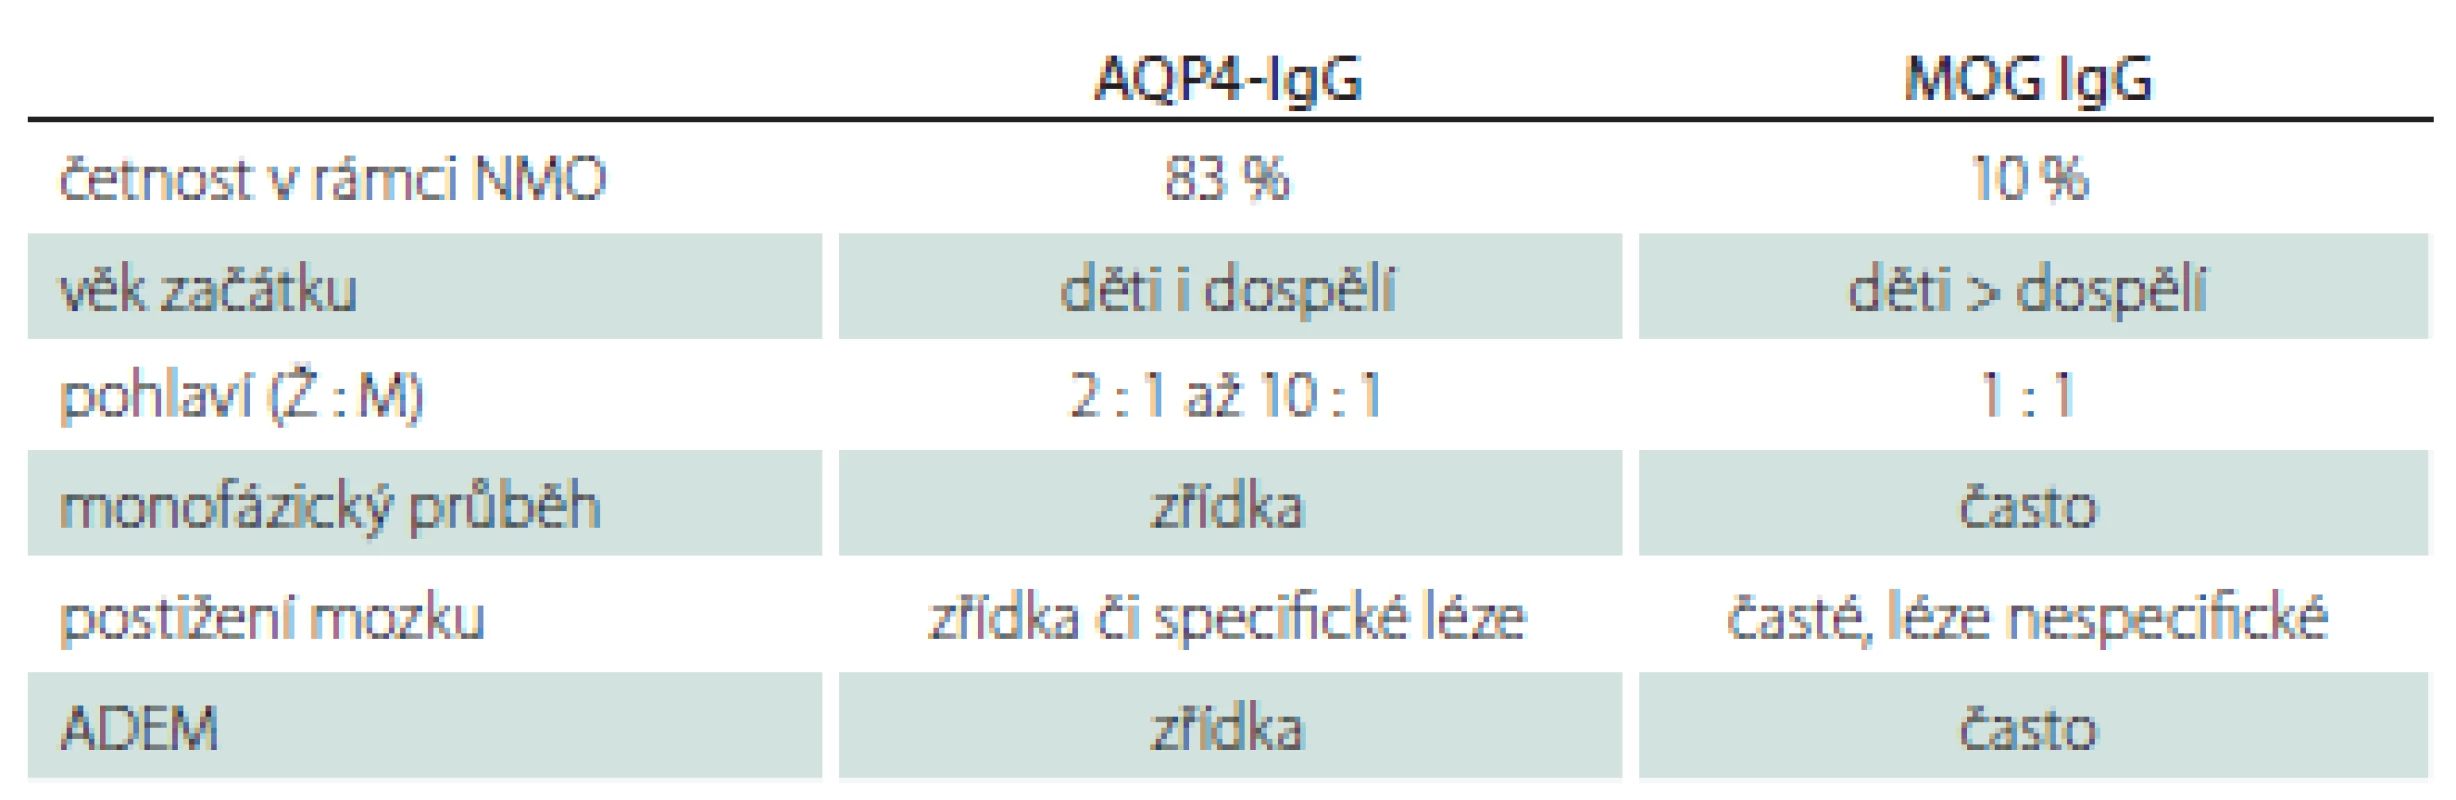 Základní charakteristiky onemocnění spojených se sérovou pozitivitou
AQP4-IgG a MOG-IgG.